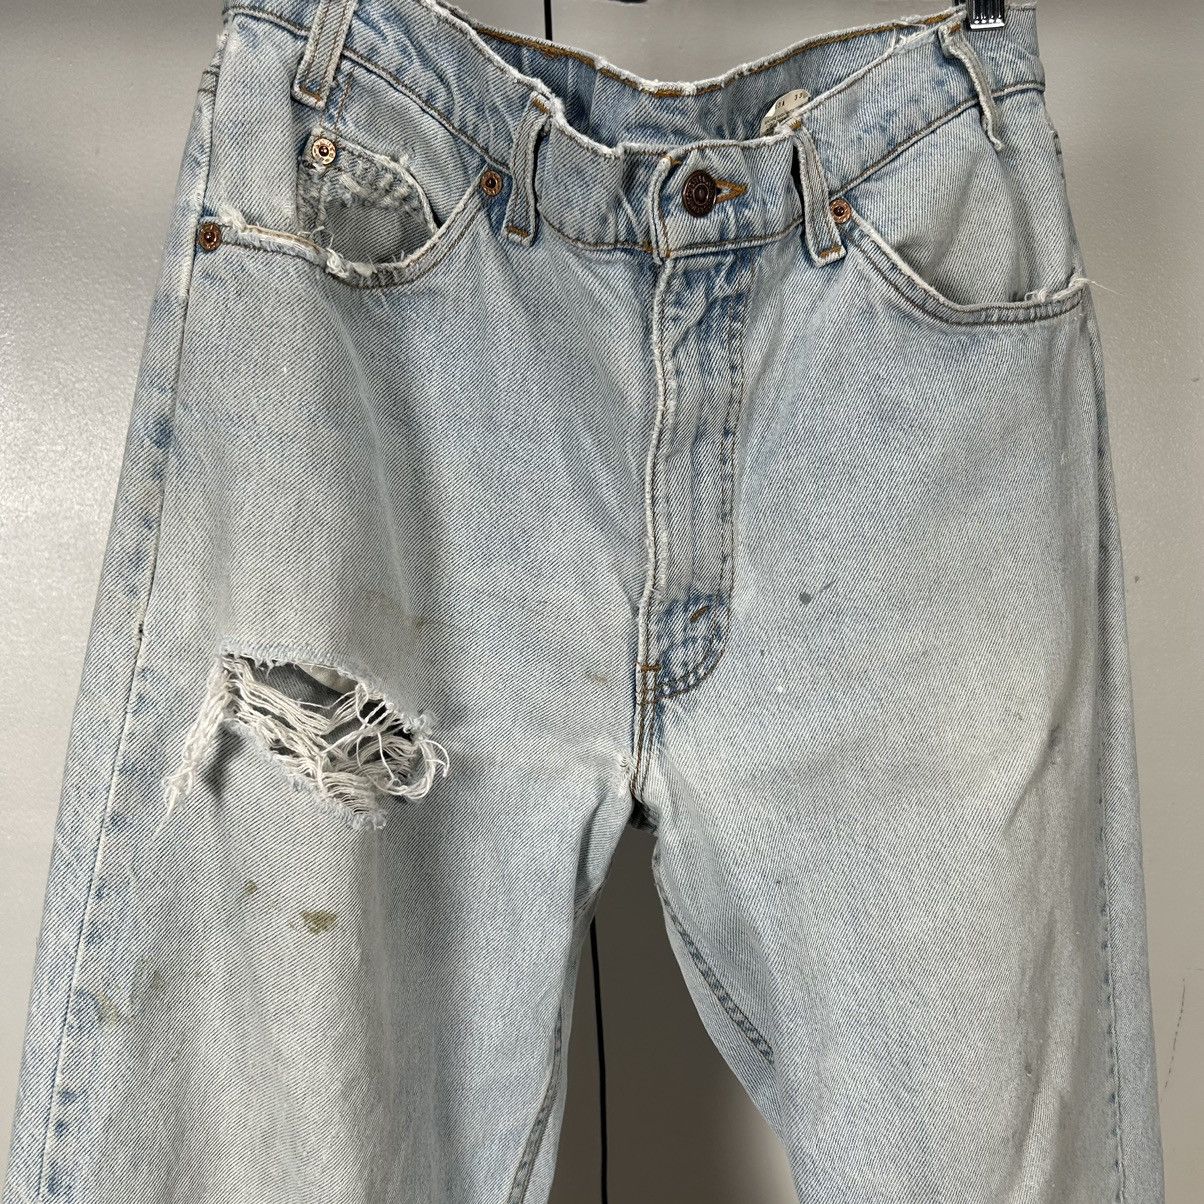 Vintage Vintage Levi’s 550 orange tab distressed jeans Size US 35 - 3 Thumbnail